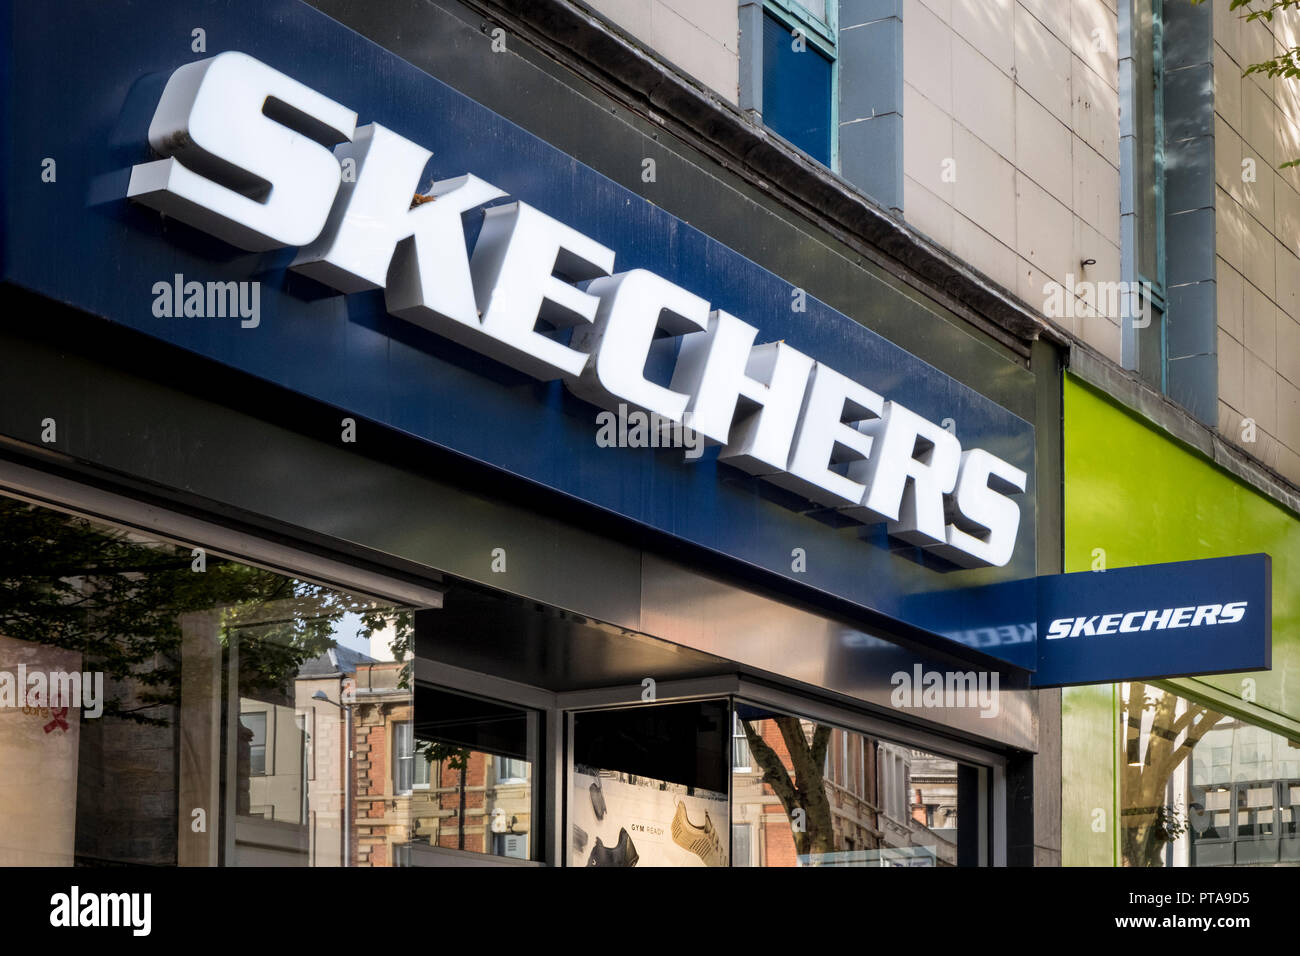 Skechers Shop Banque d'image et photos 